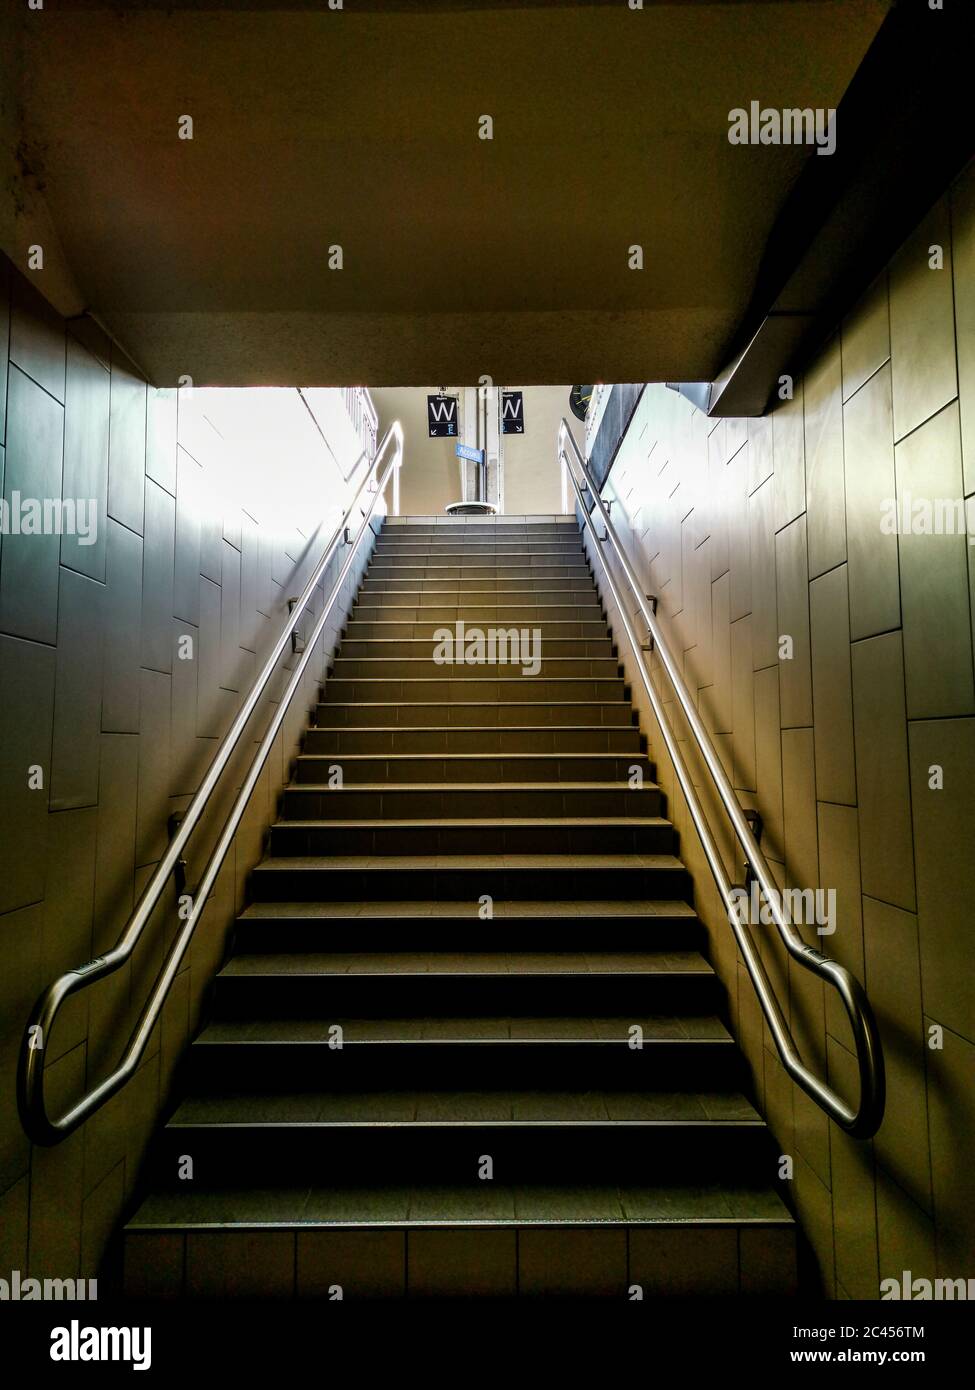 Escaliers dans une gare de train aérien. France Banque D'Images